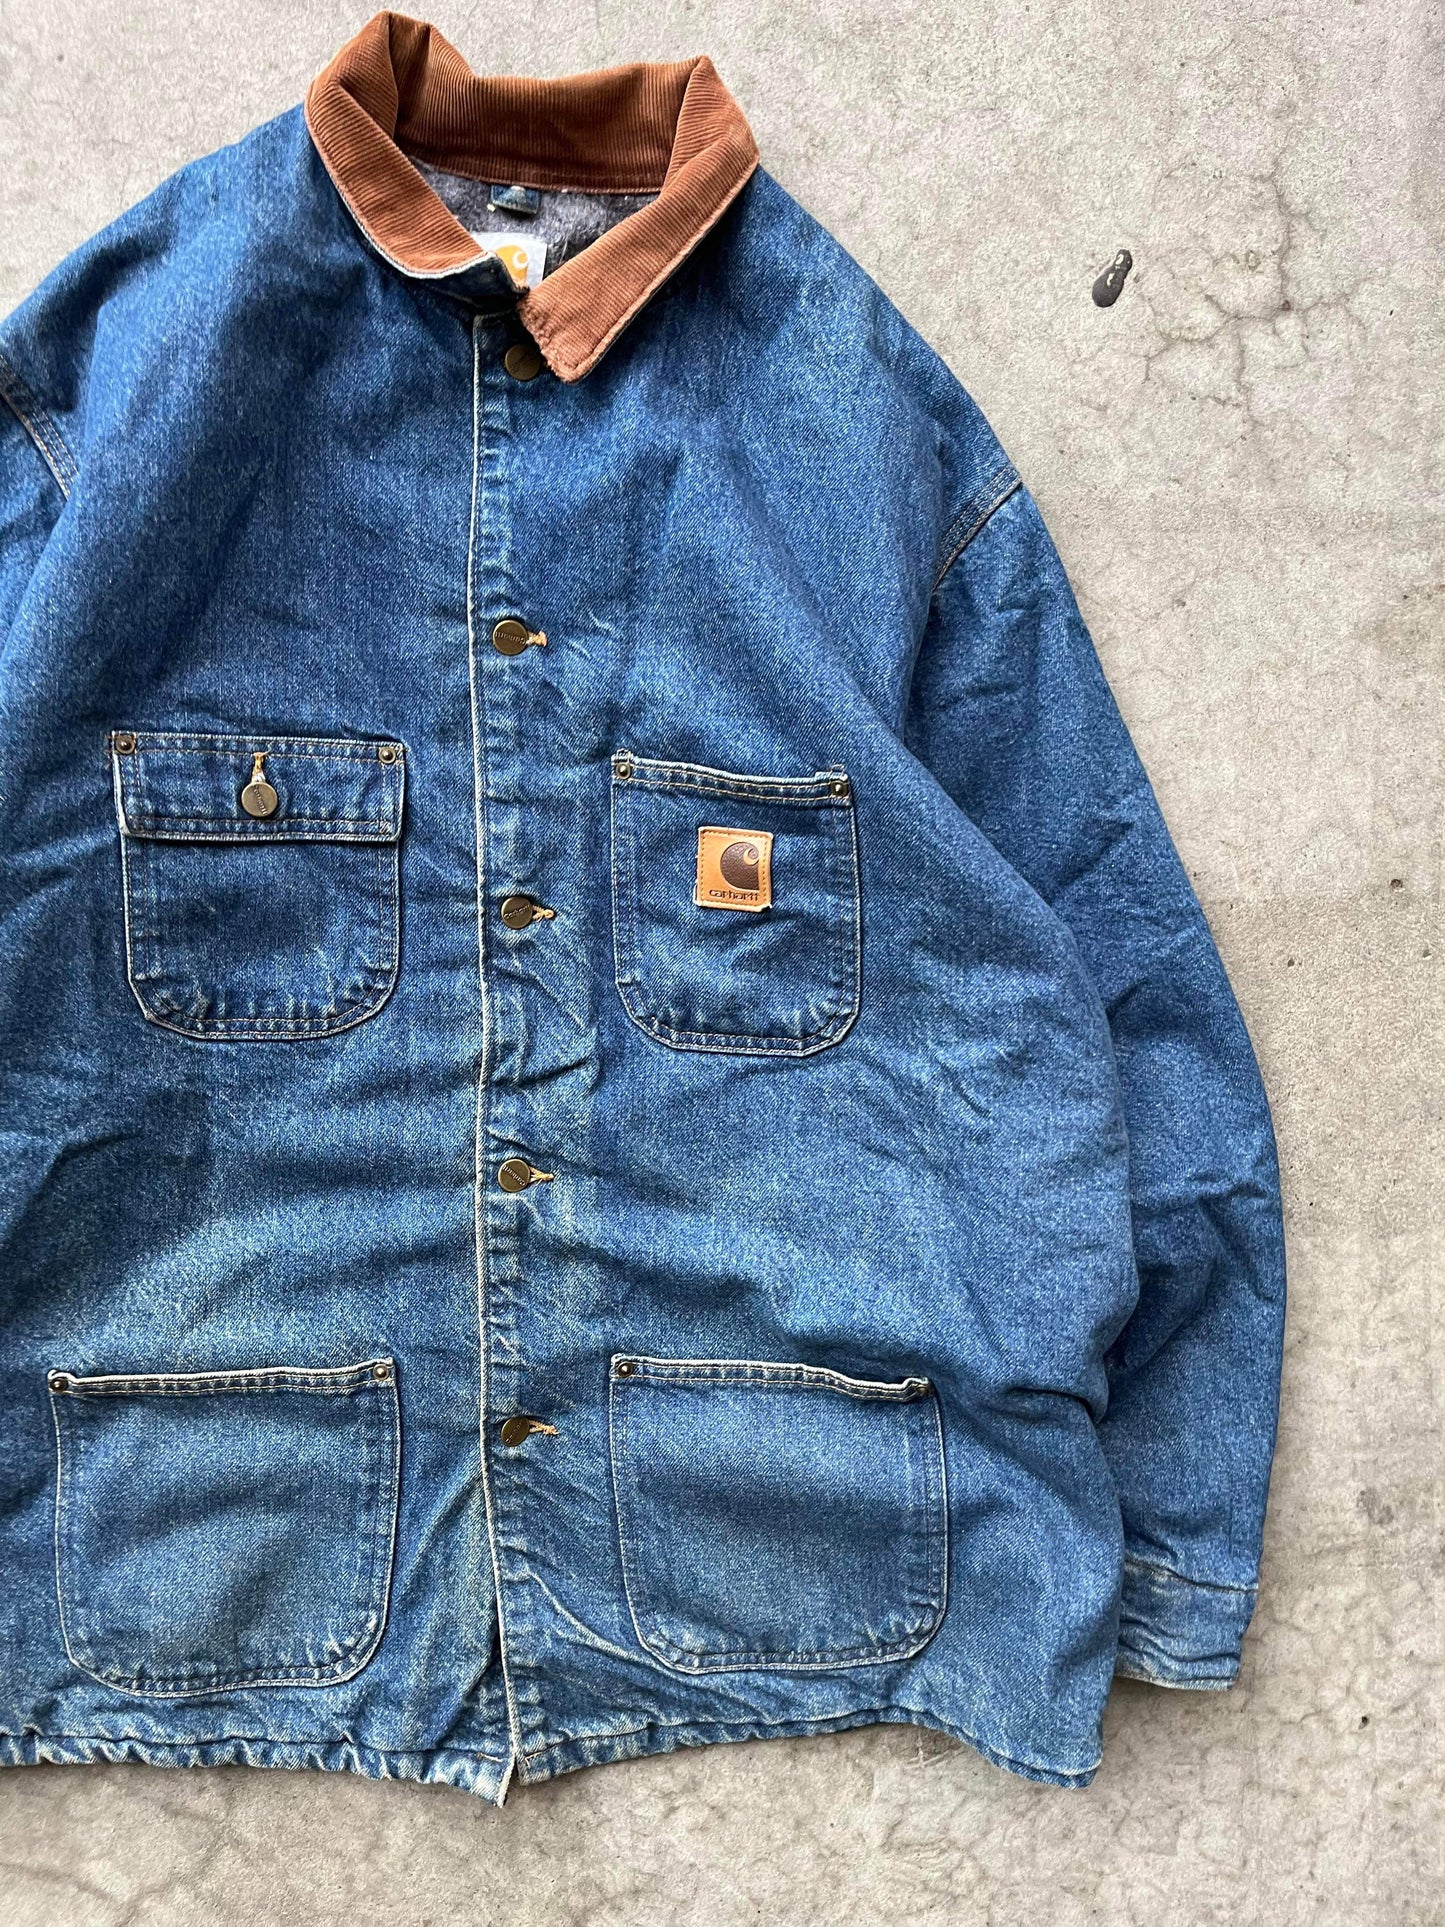 (XL/2X) Vintage Carhartt Denim Chore Jacket